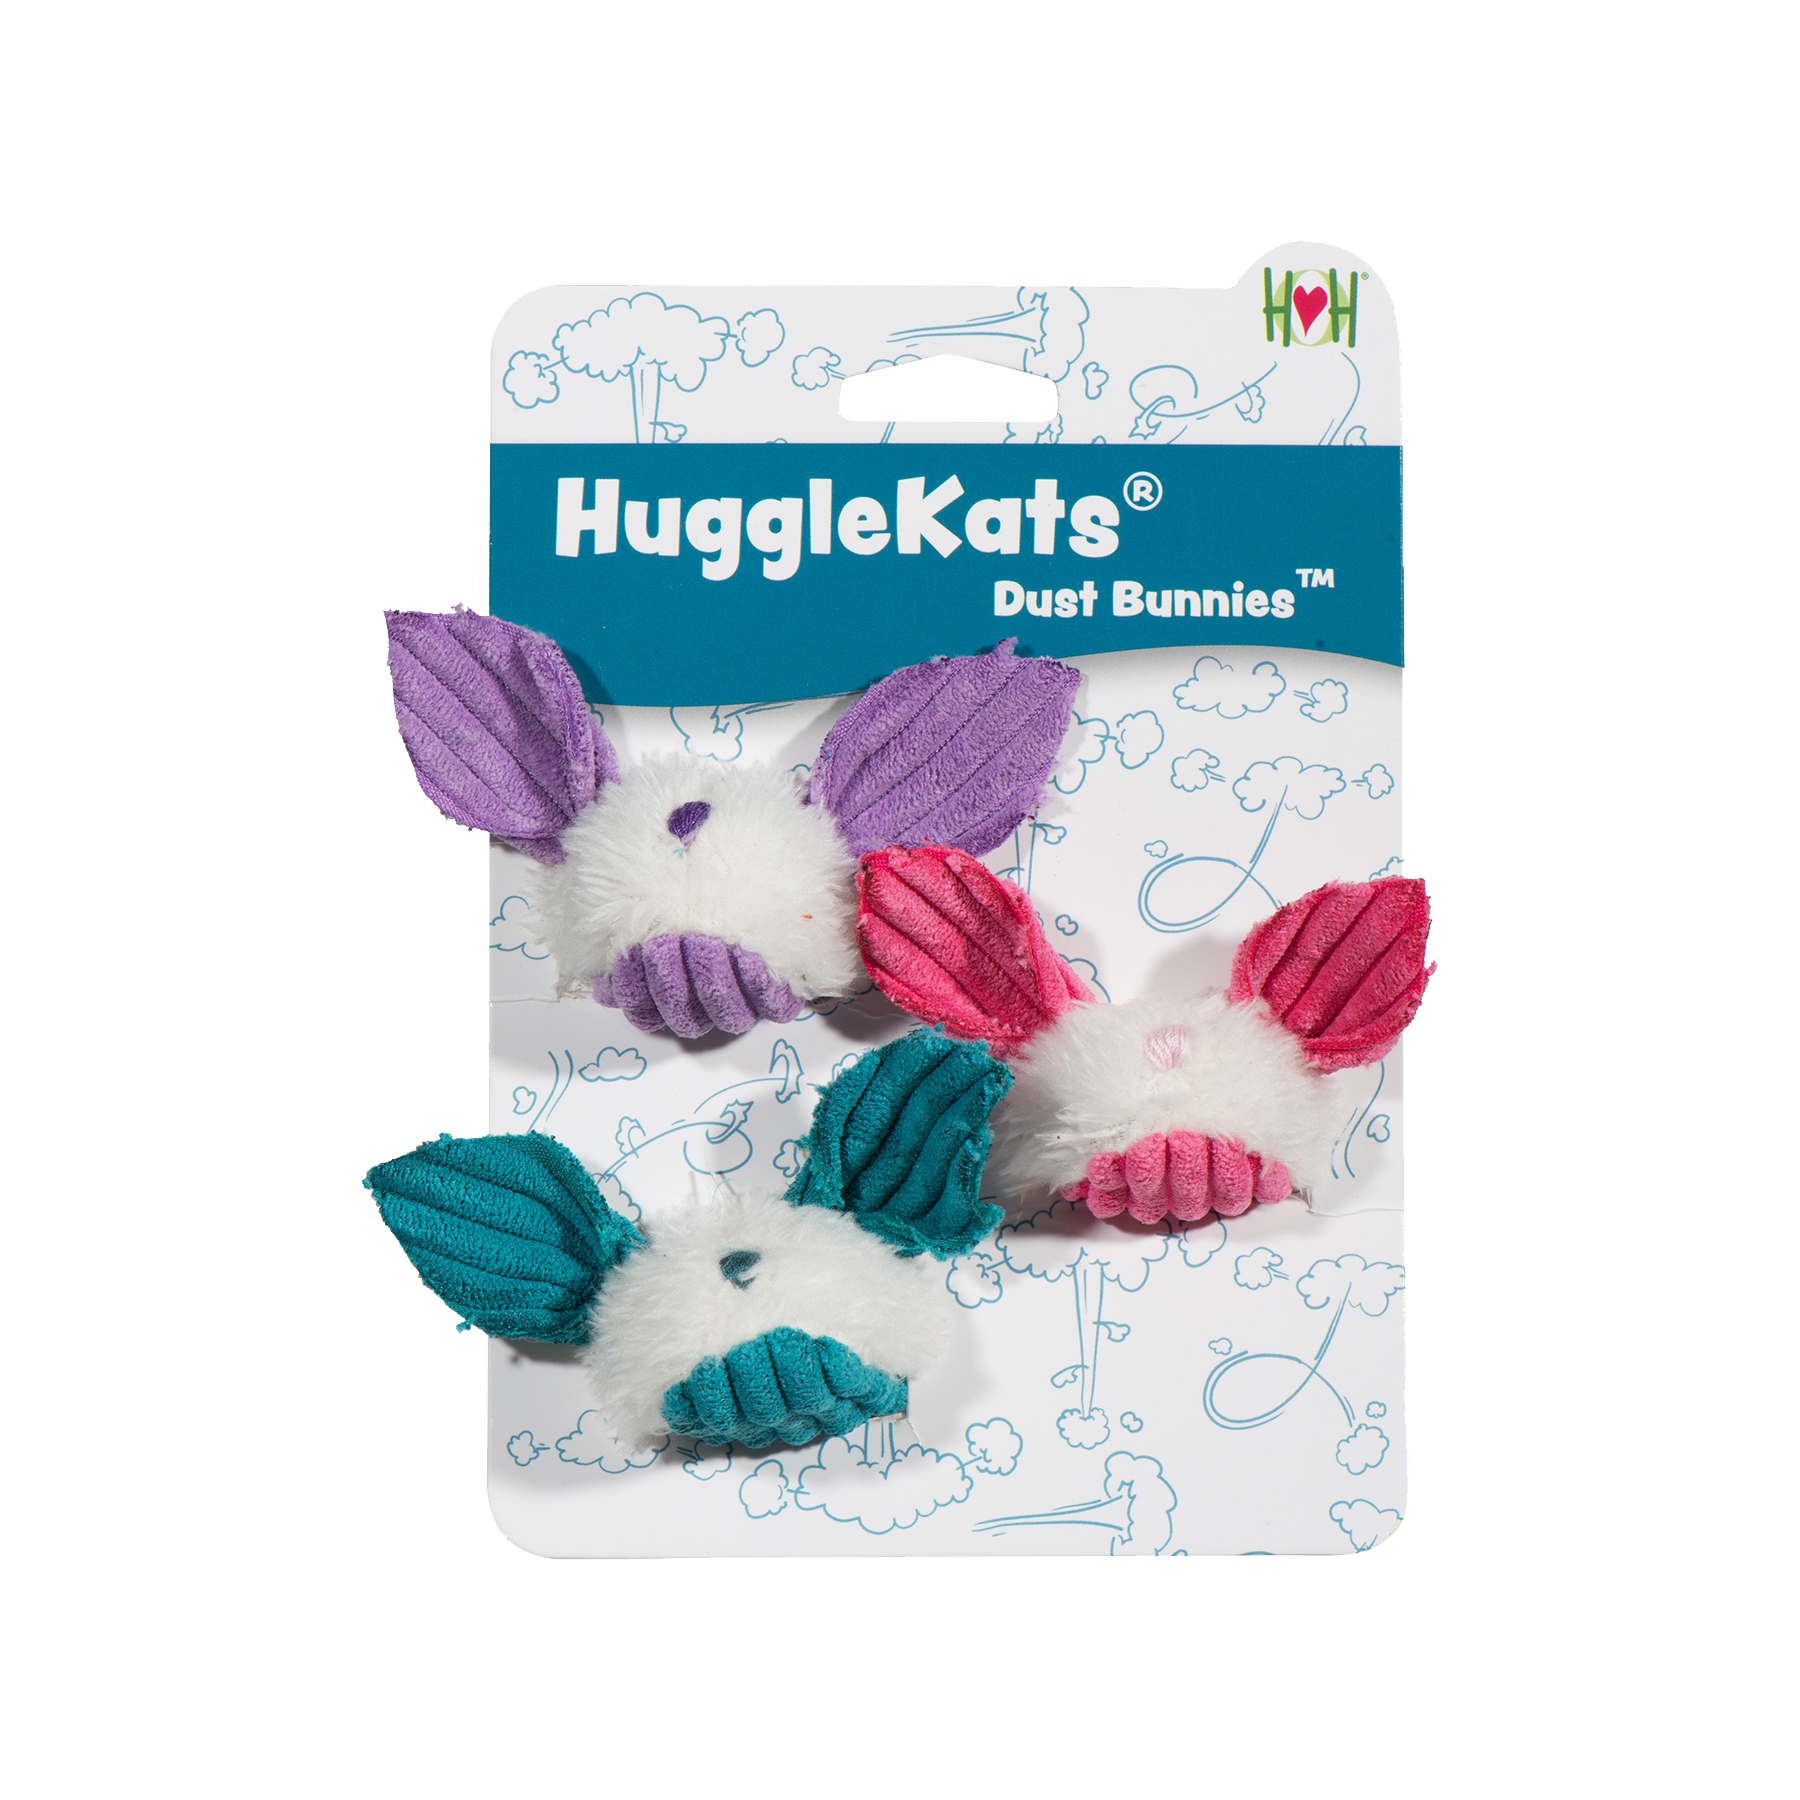 HuggleKats® Dust Bunnies